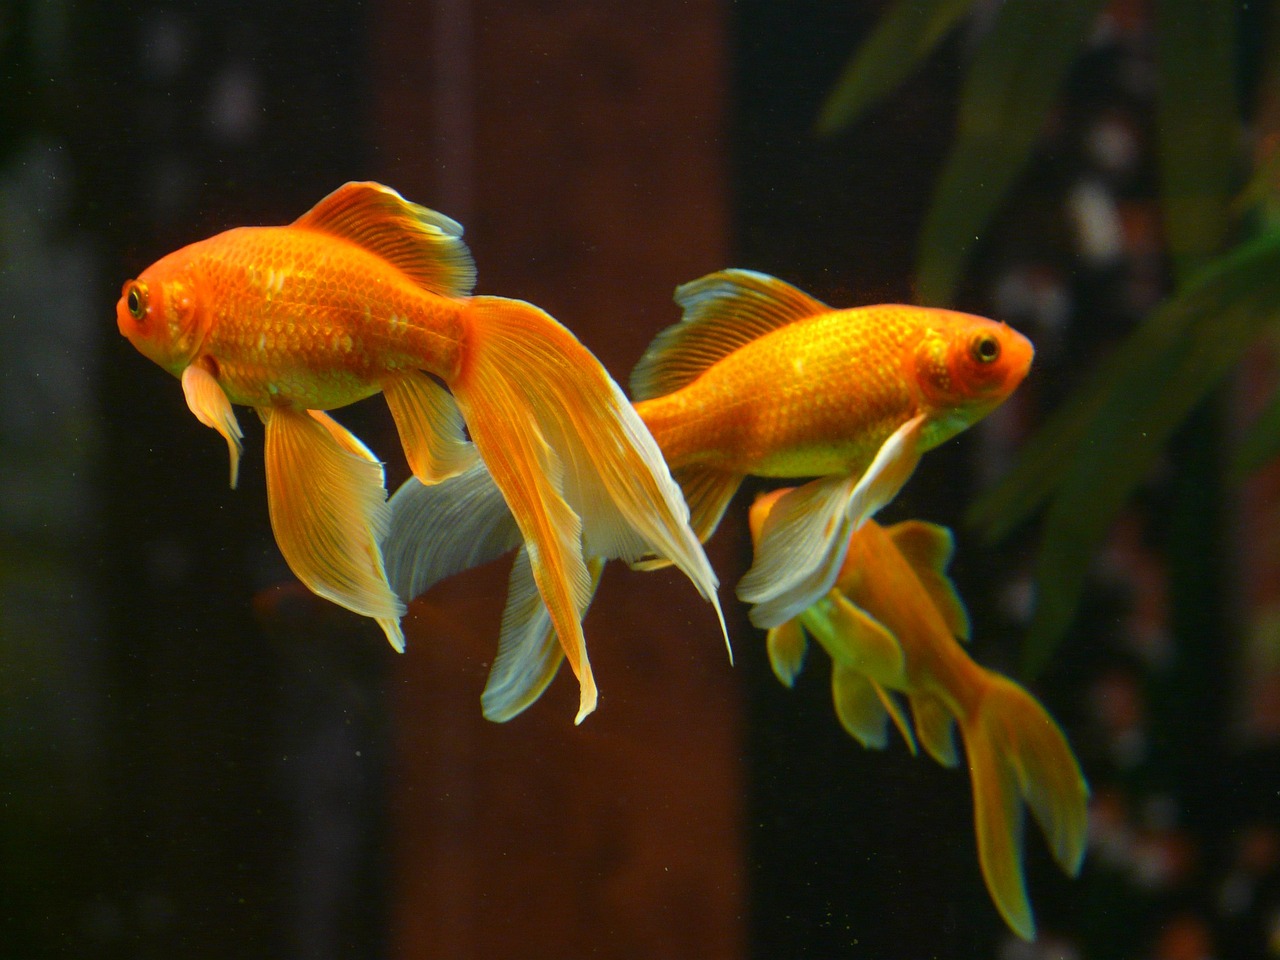 「金魚」は複数形でも ”goldfish”